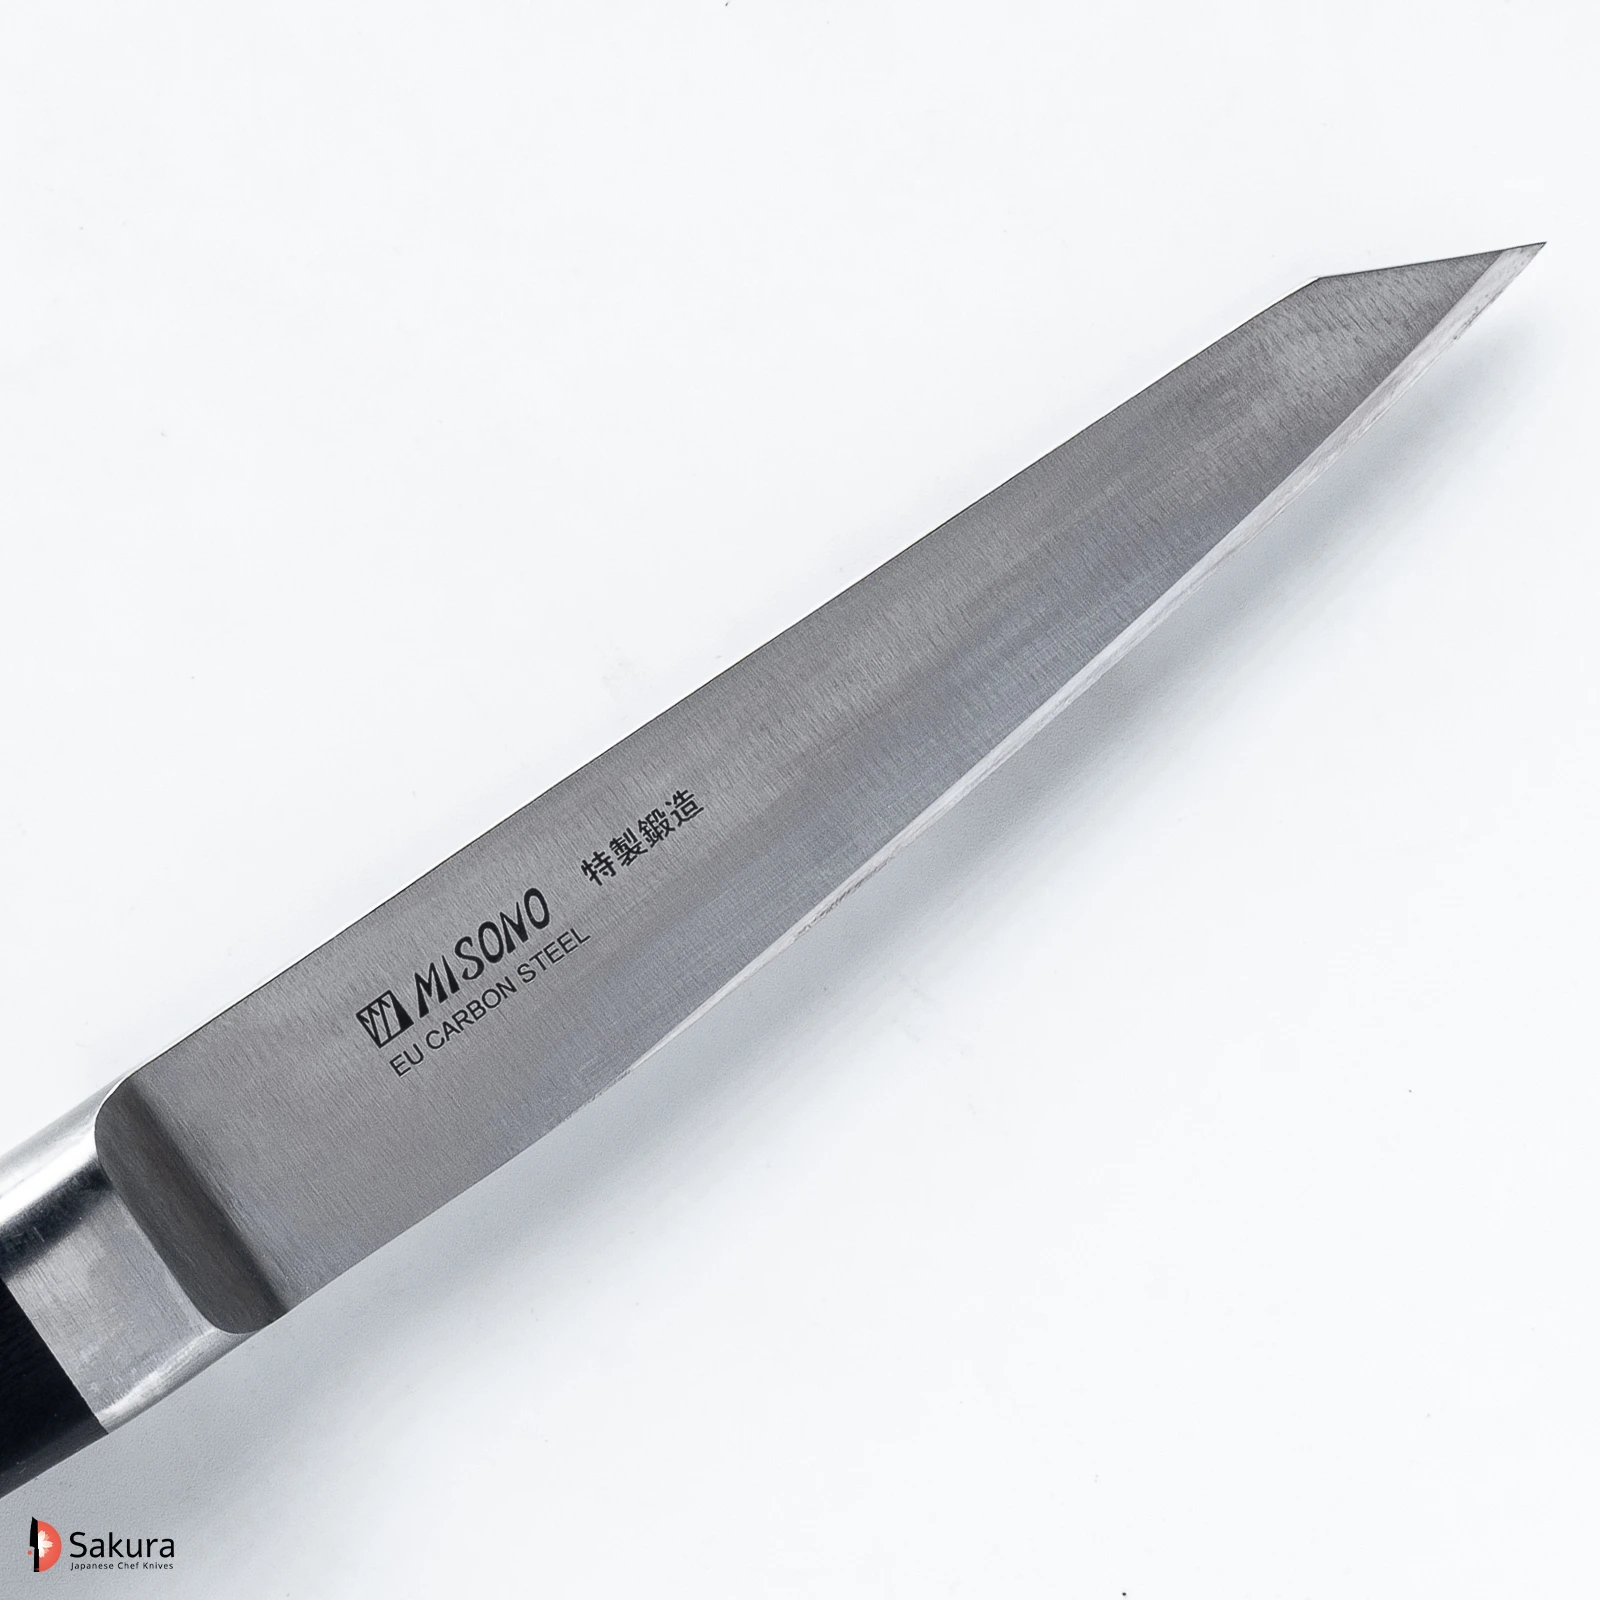 סכין פירוק בשר/עופות הוֹנְייסוּקִי מארו 145מ״מ פלדת EU Carbon גימור מט מלוטש מיסונו יפן מק״ט SKMISMSO1422349